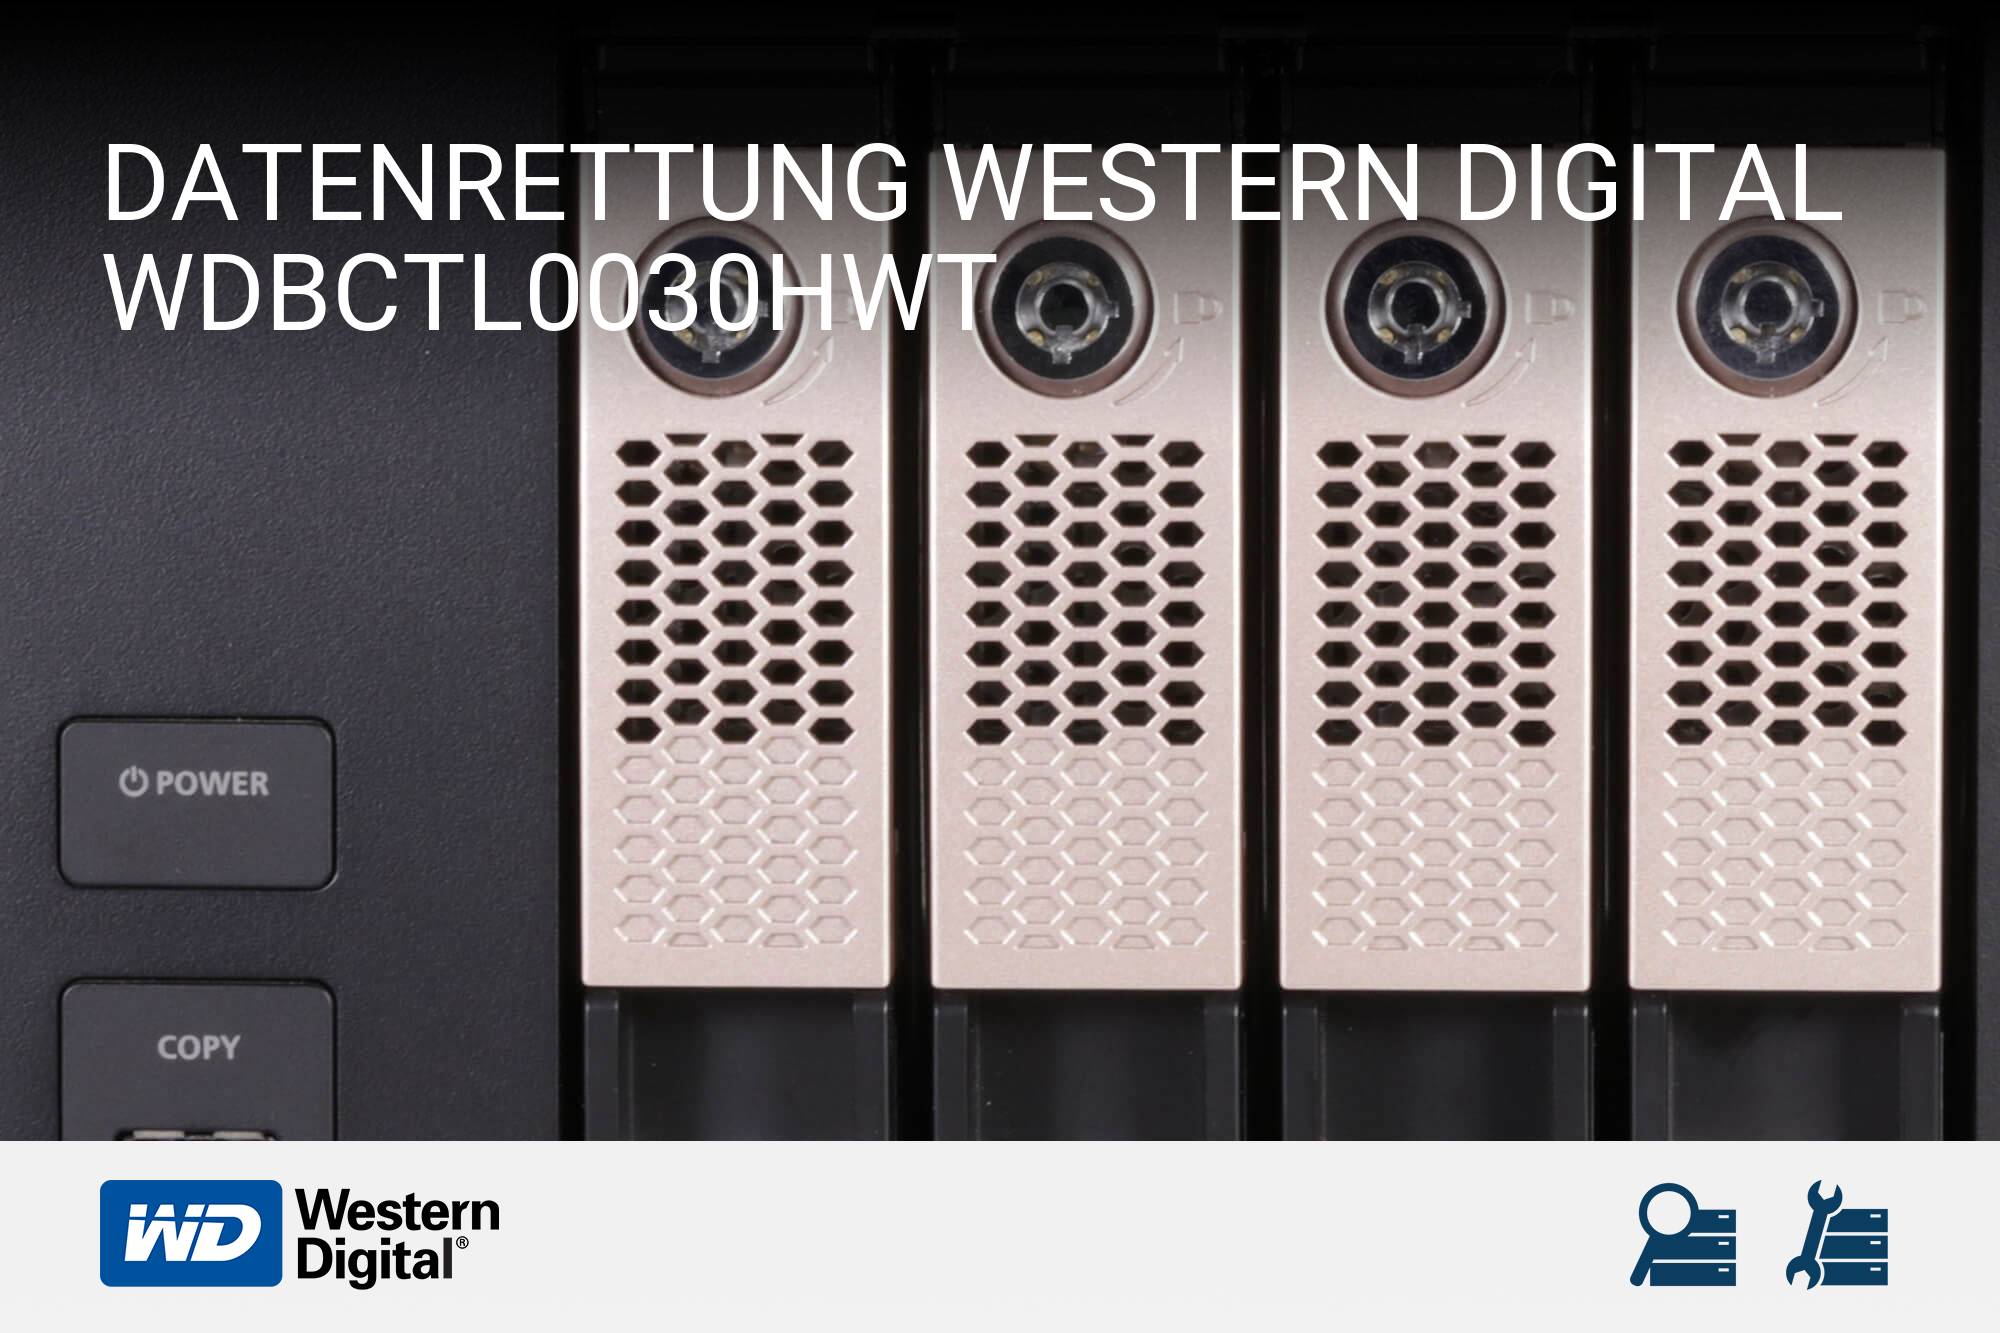 Western Digital WDBCTL0030HWT